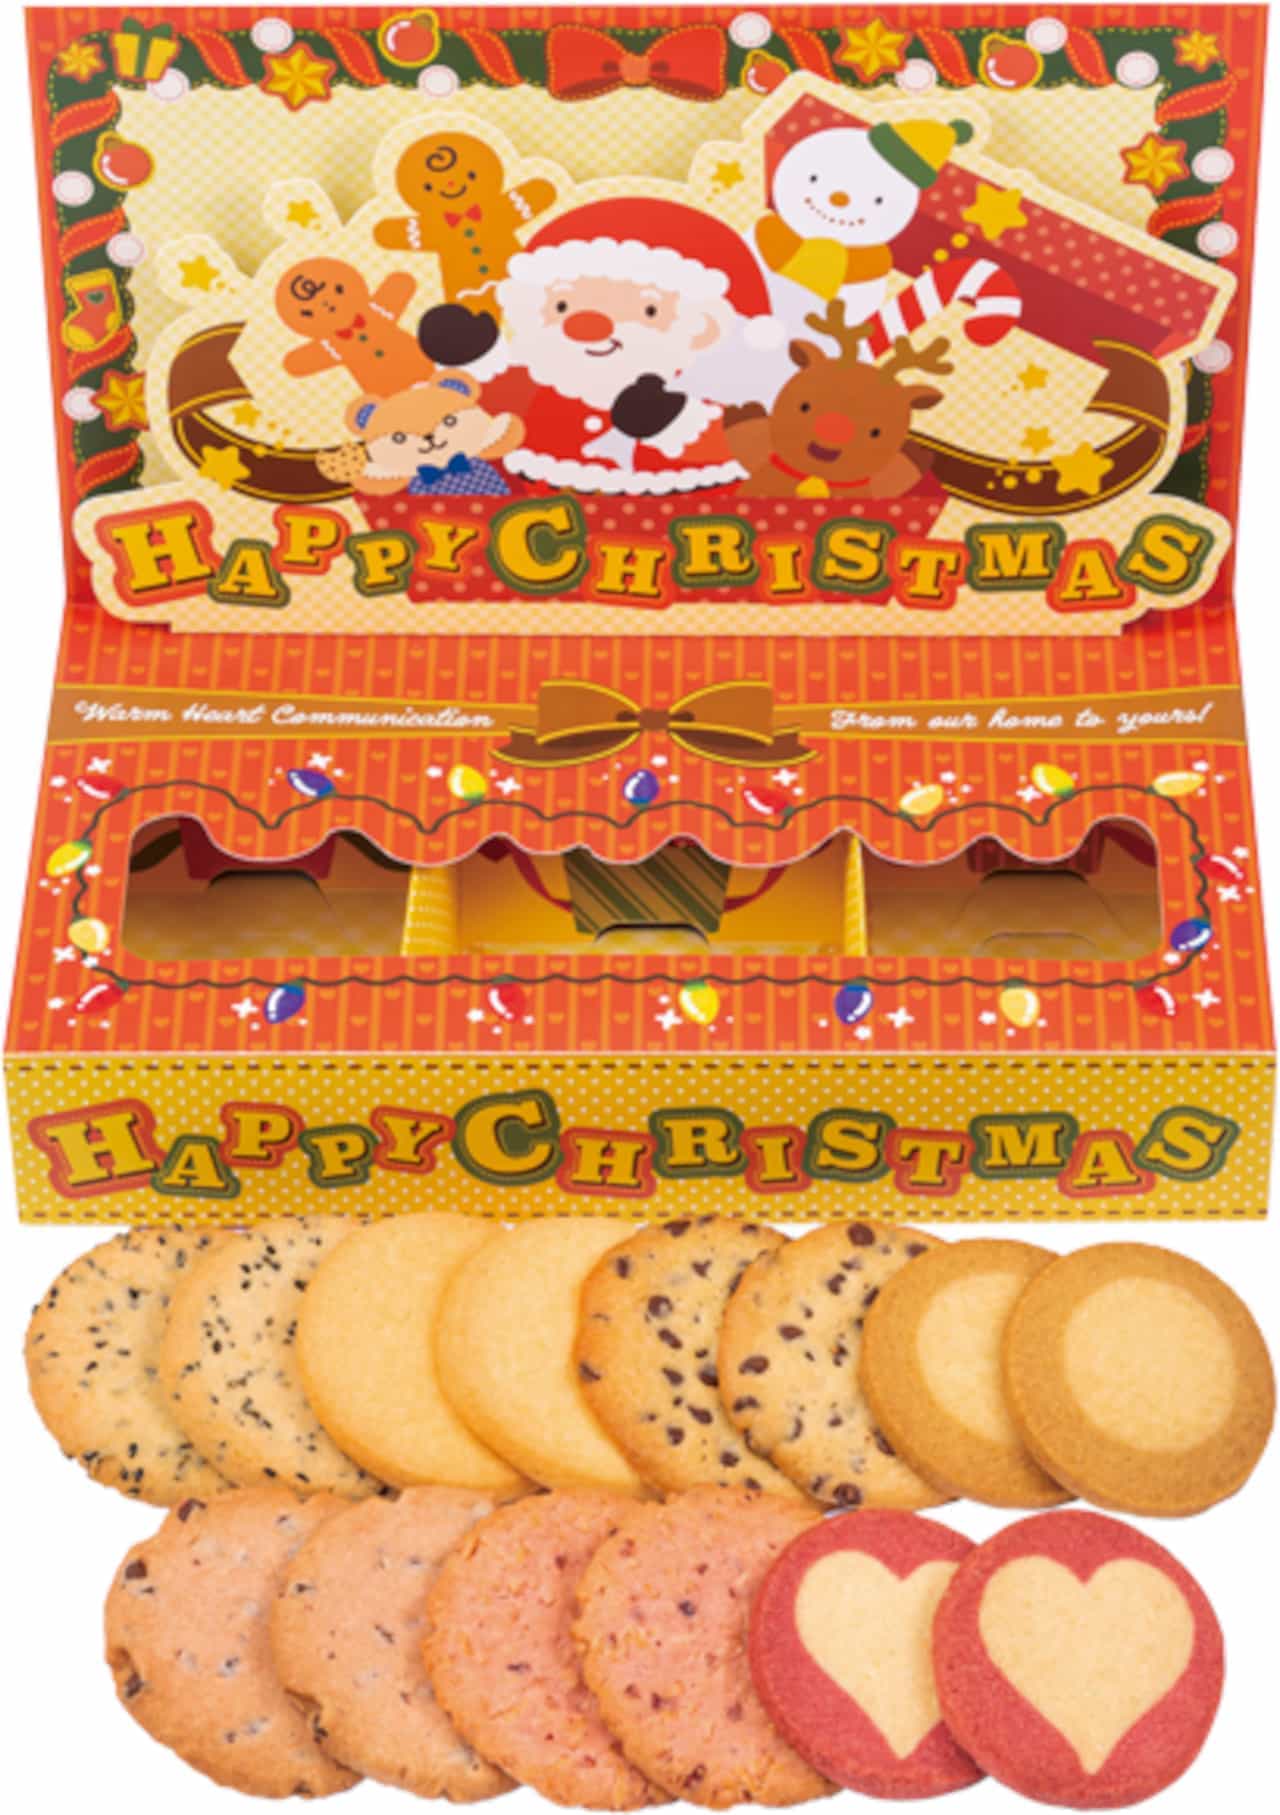 ステラおばさんのクッキー “ステラおばさんの Happy Xmas!!”